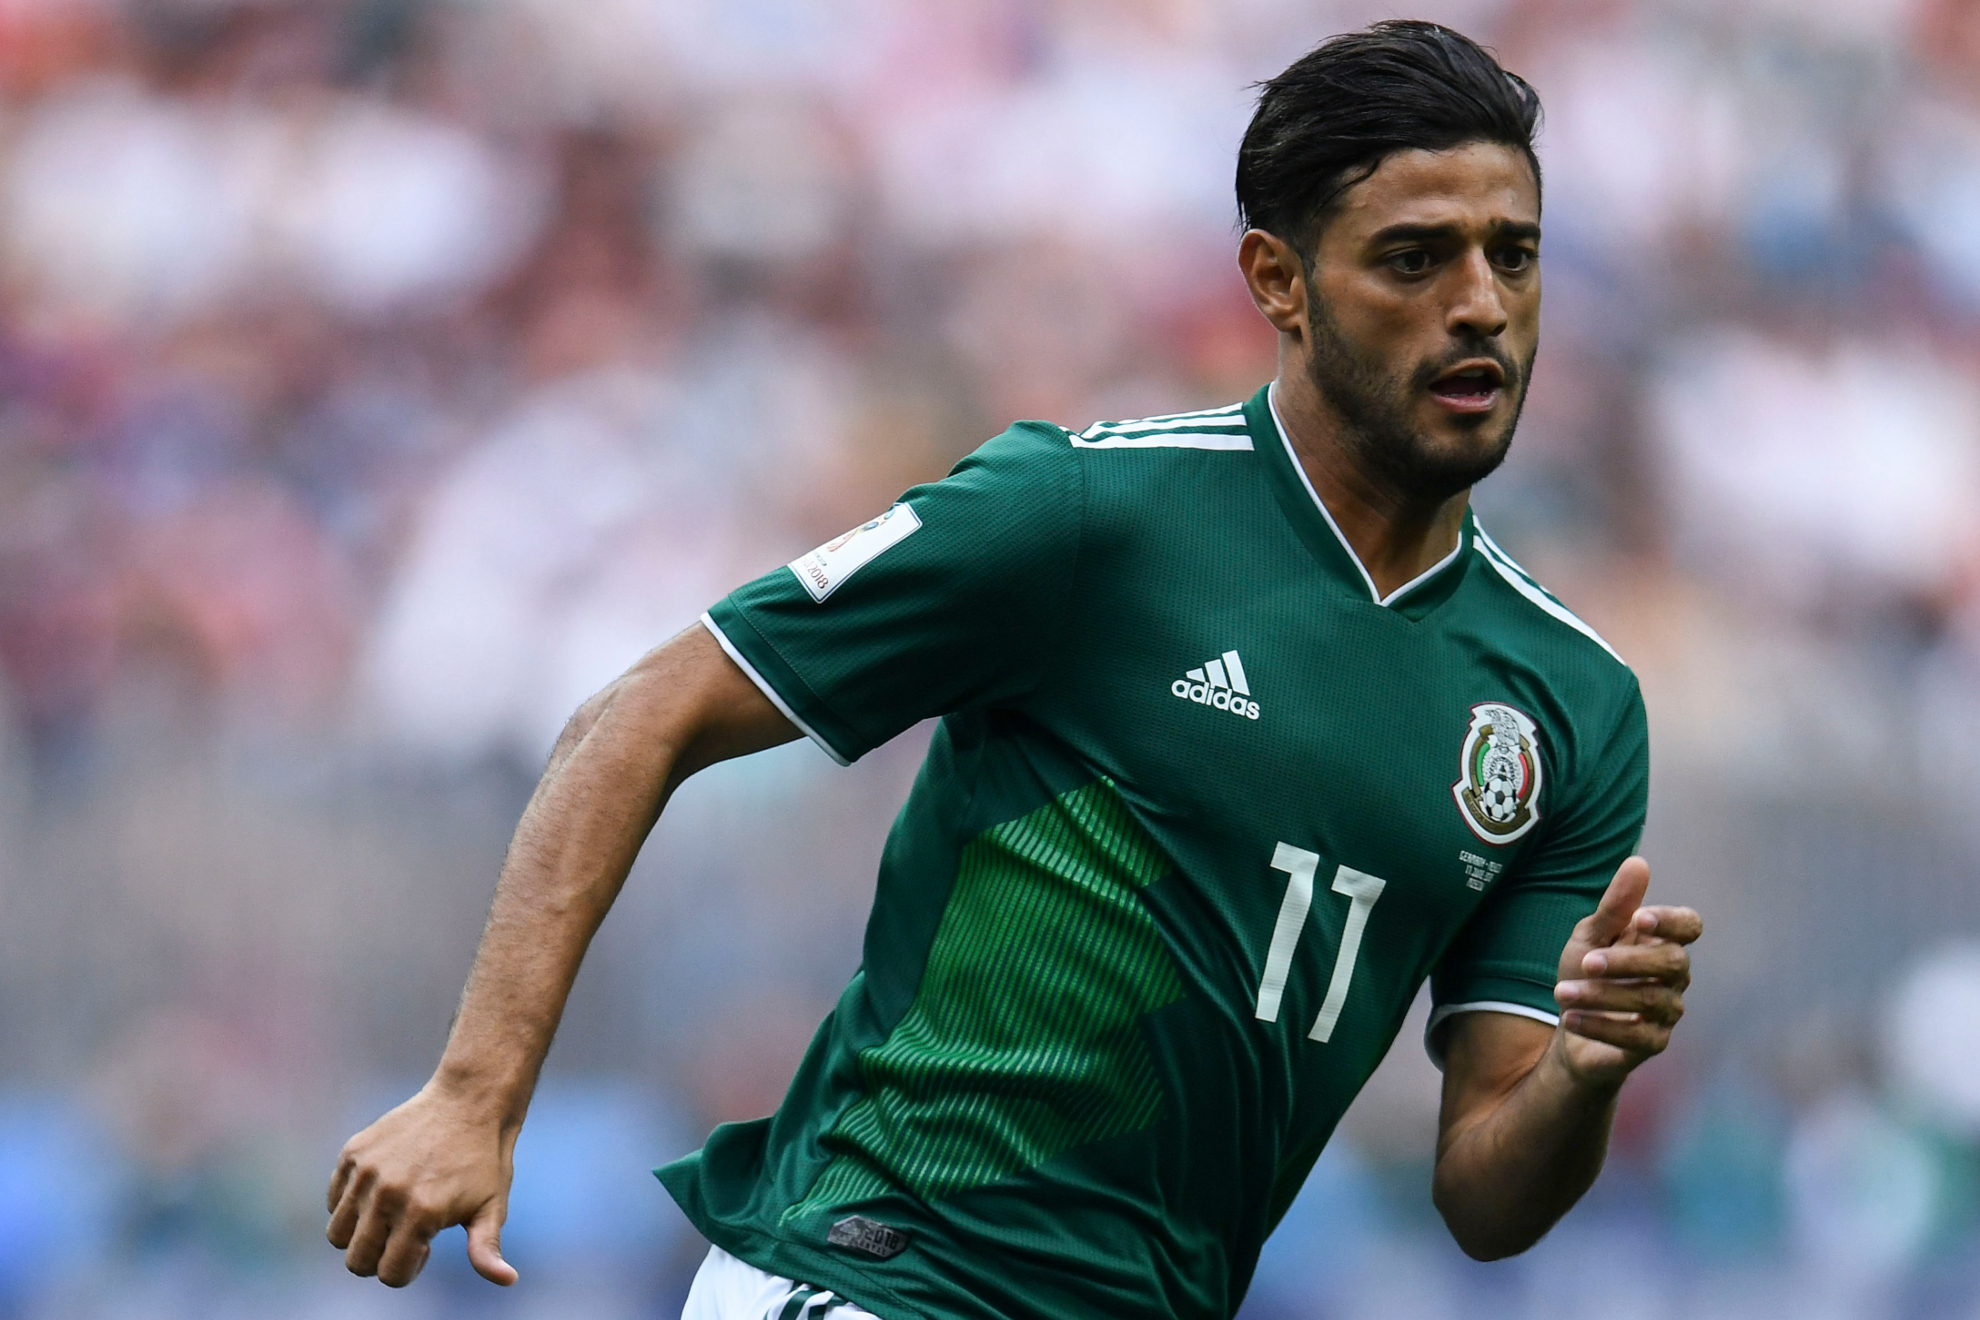 Carlos Vela prioriza su felicidad sobre la selección mexicana: "Es mejor no estorbar"